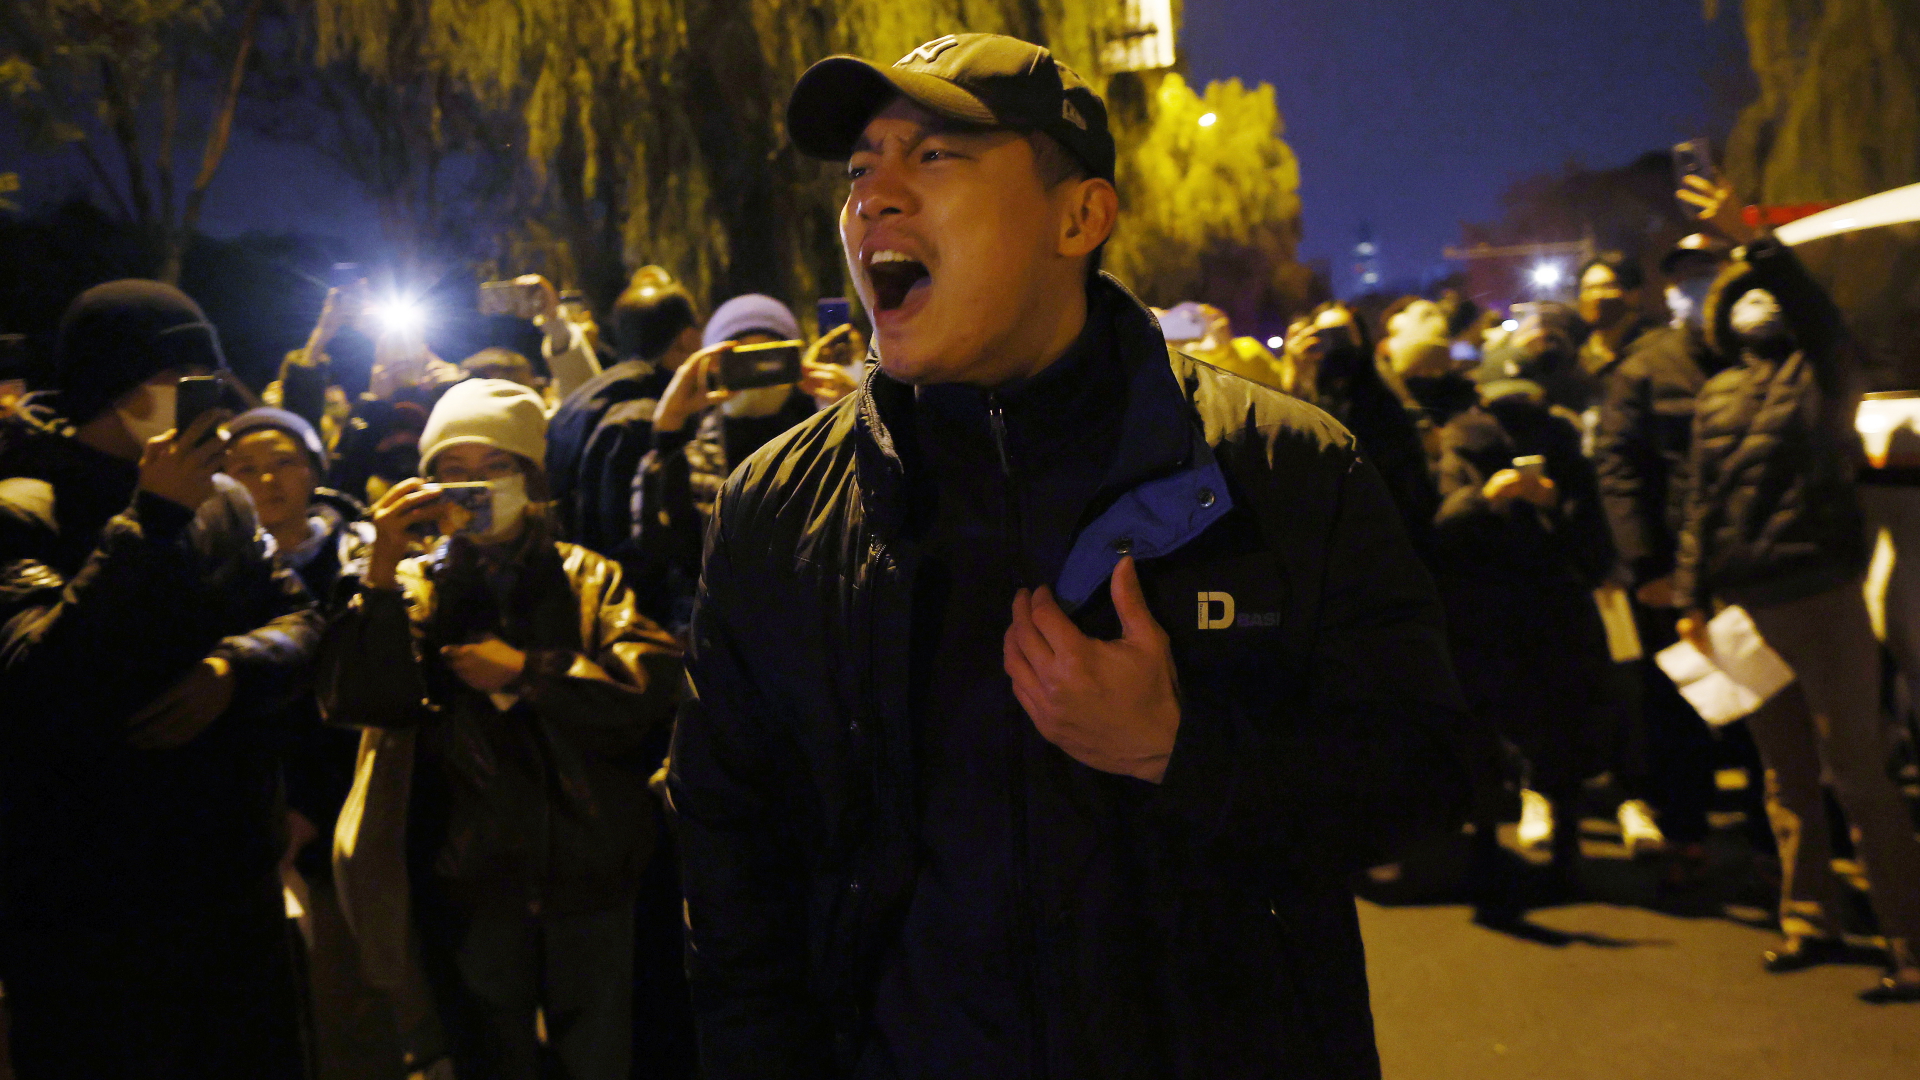 Proteste in China: “Wir sind hier, weil wir mutig sind”